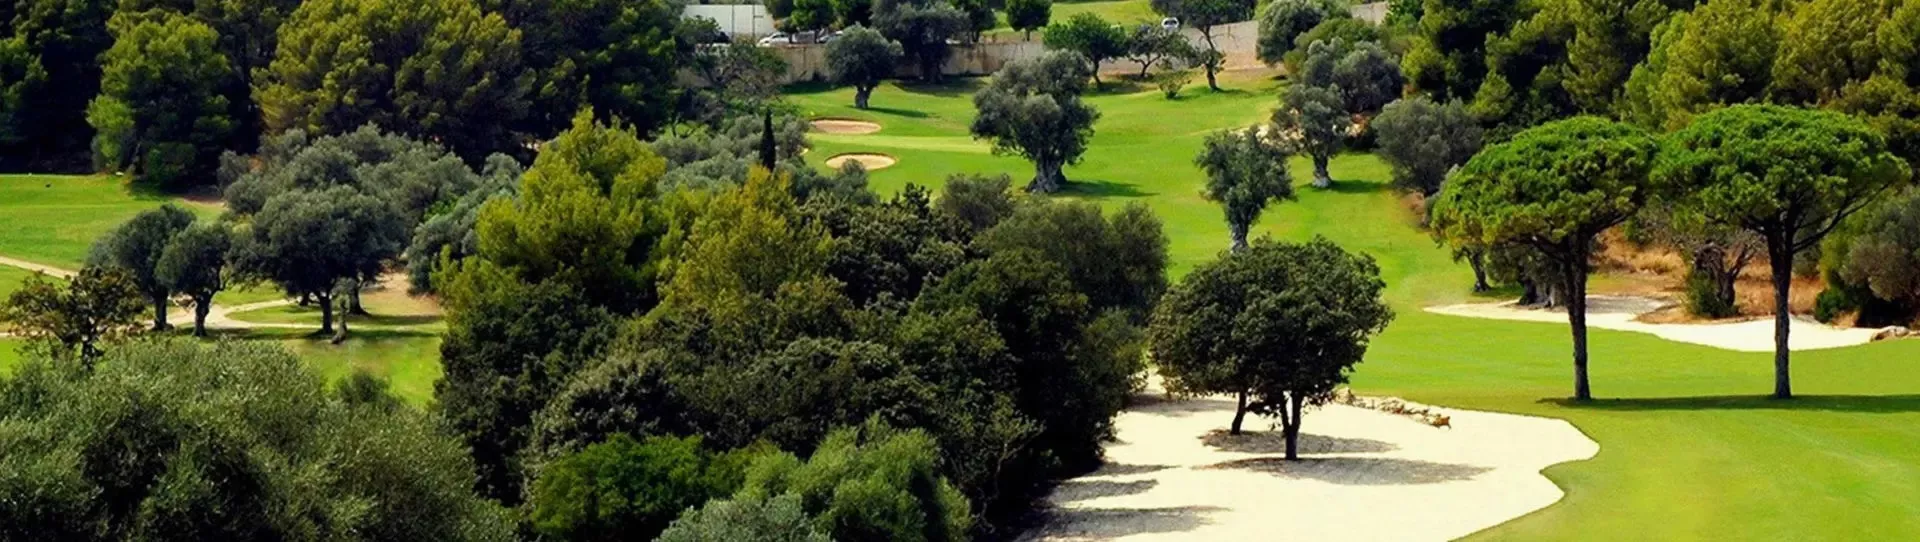 Spain golf courses - Pollensa Golf Course - Photo 2